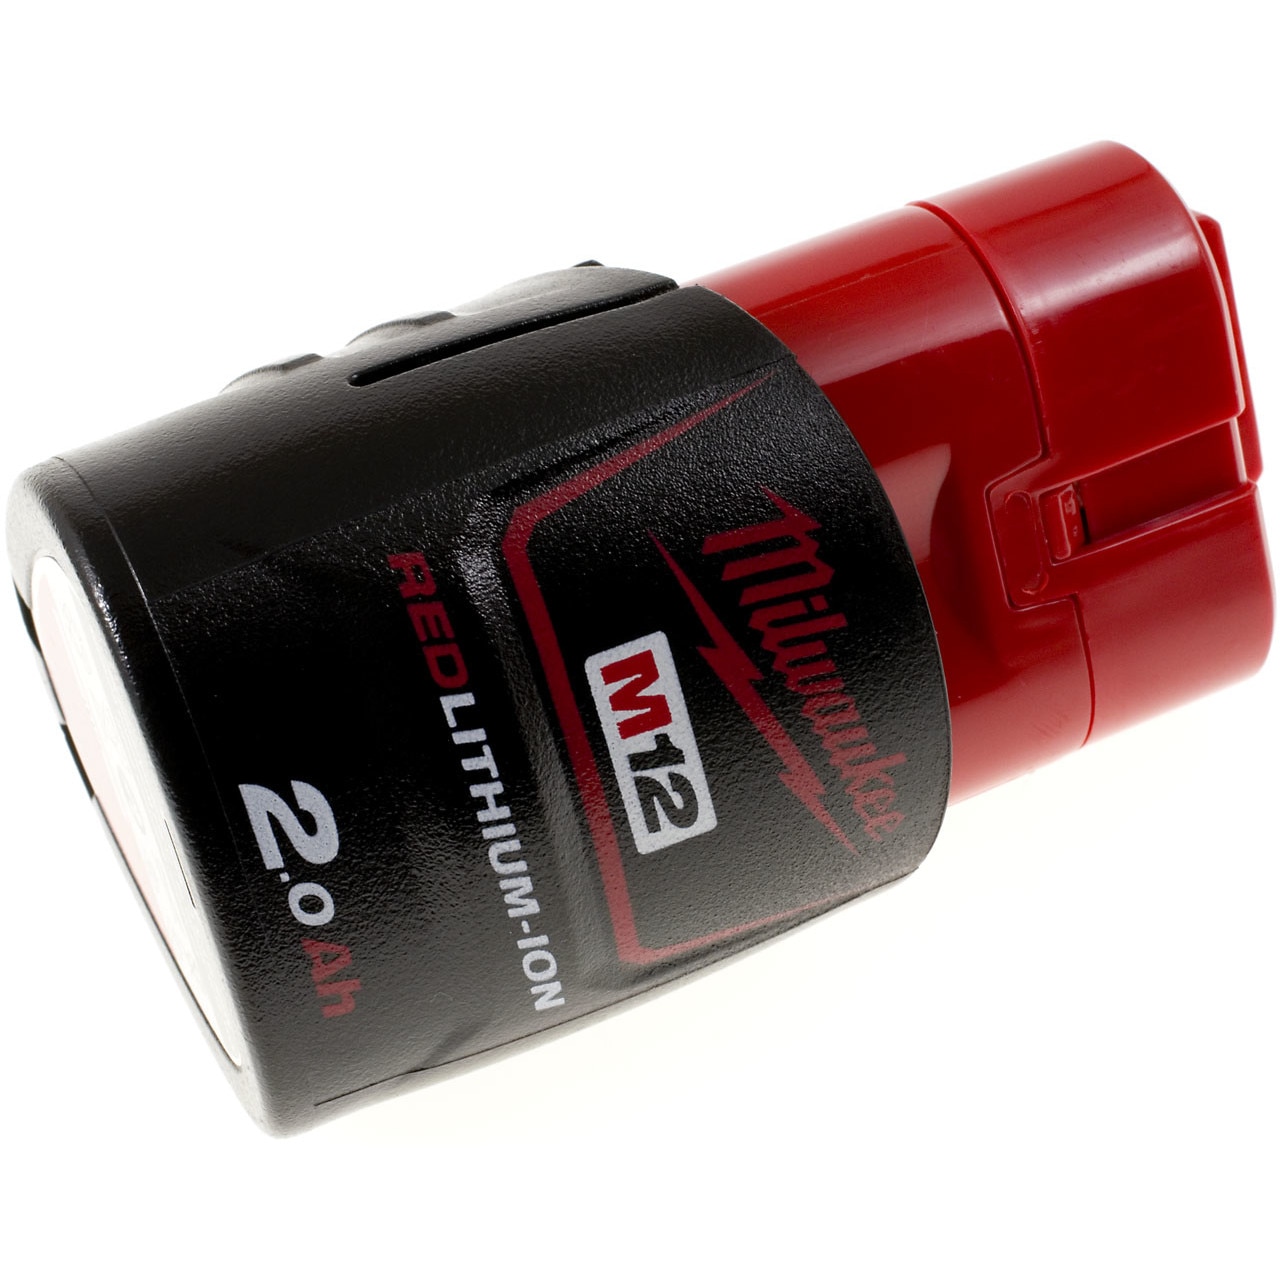 Batterie 12V 2Ah Red Lithium M12B2, 4932430064 - Milwaukee